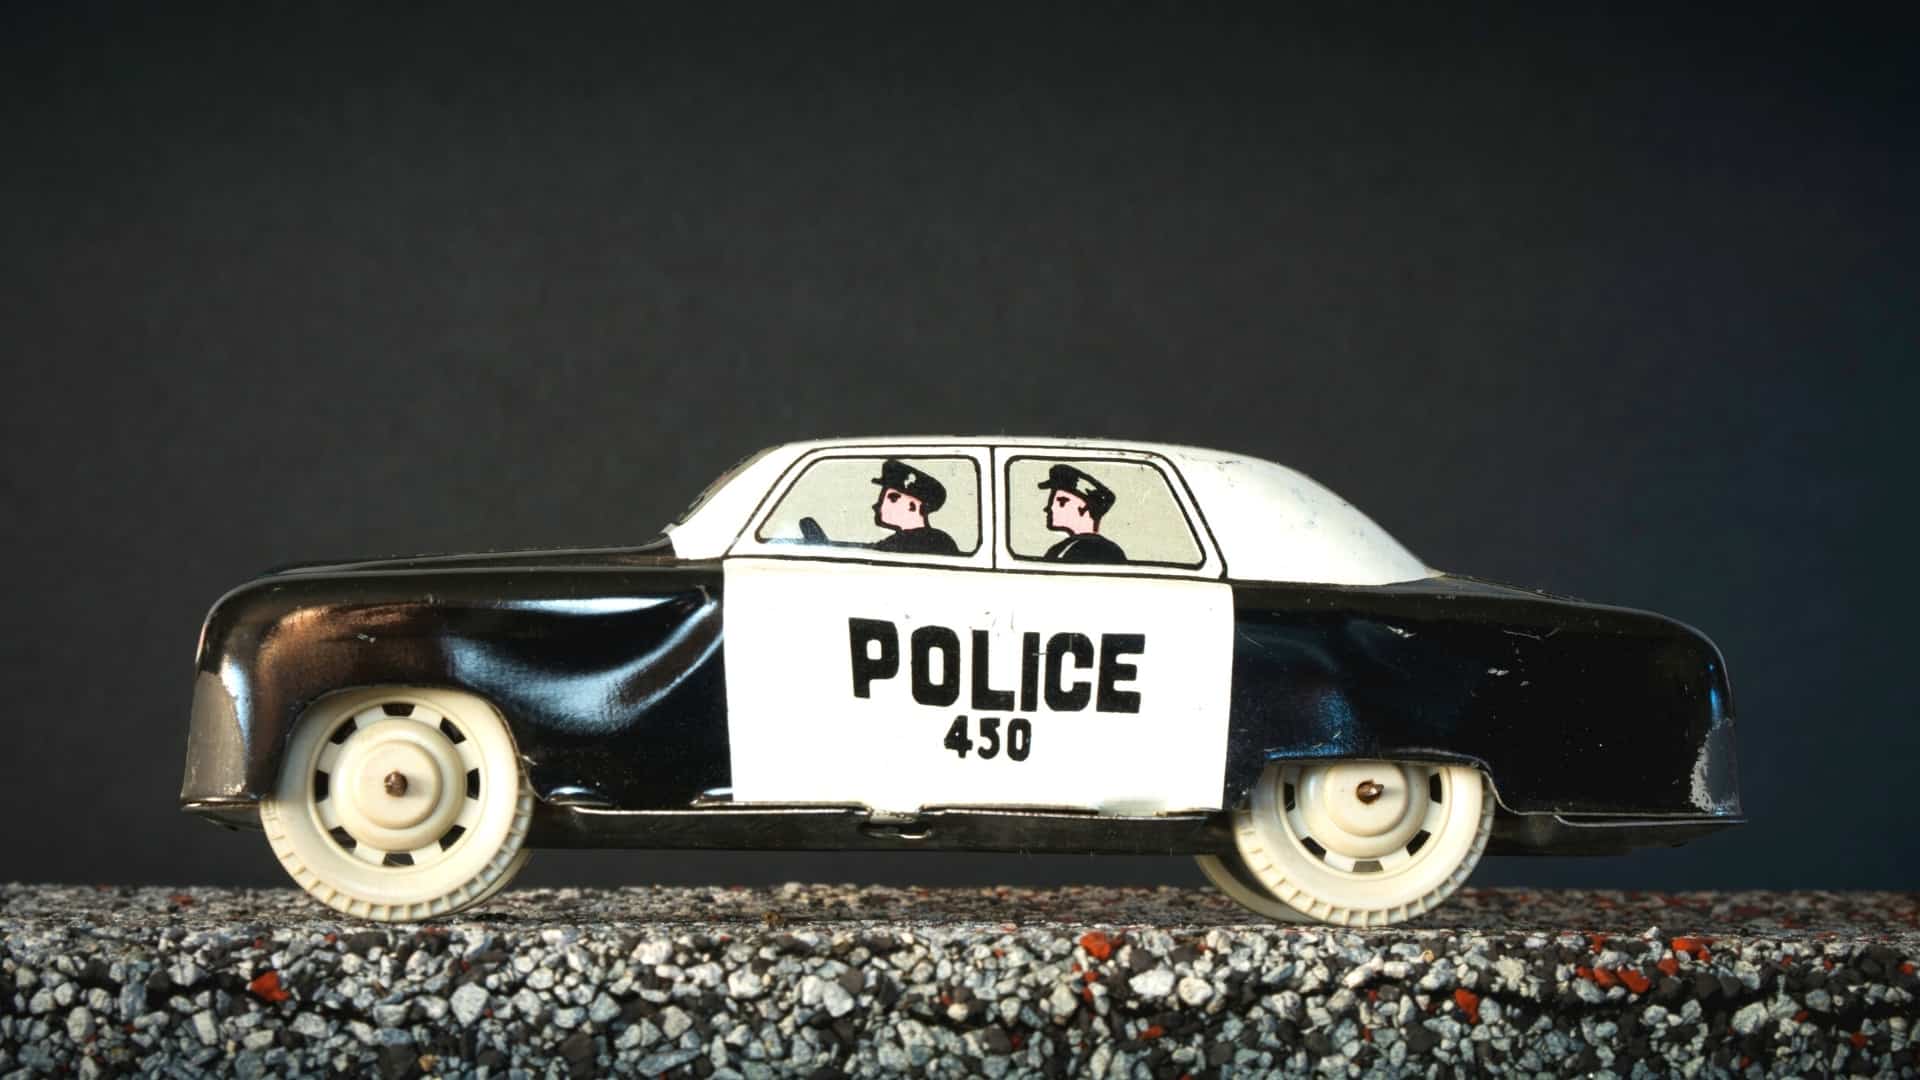 Cutest police toys